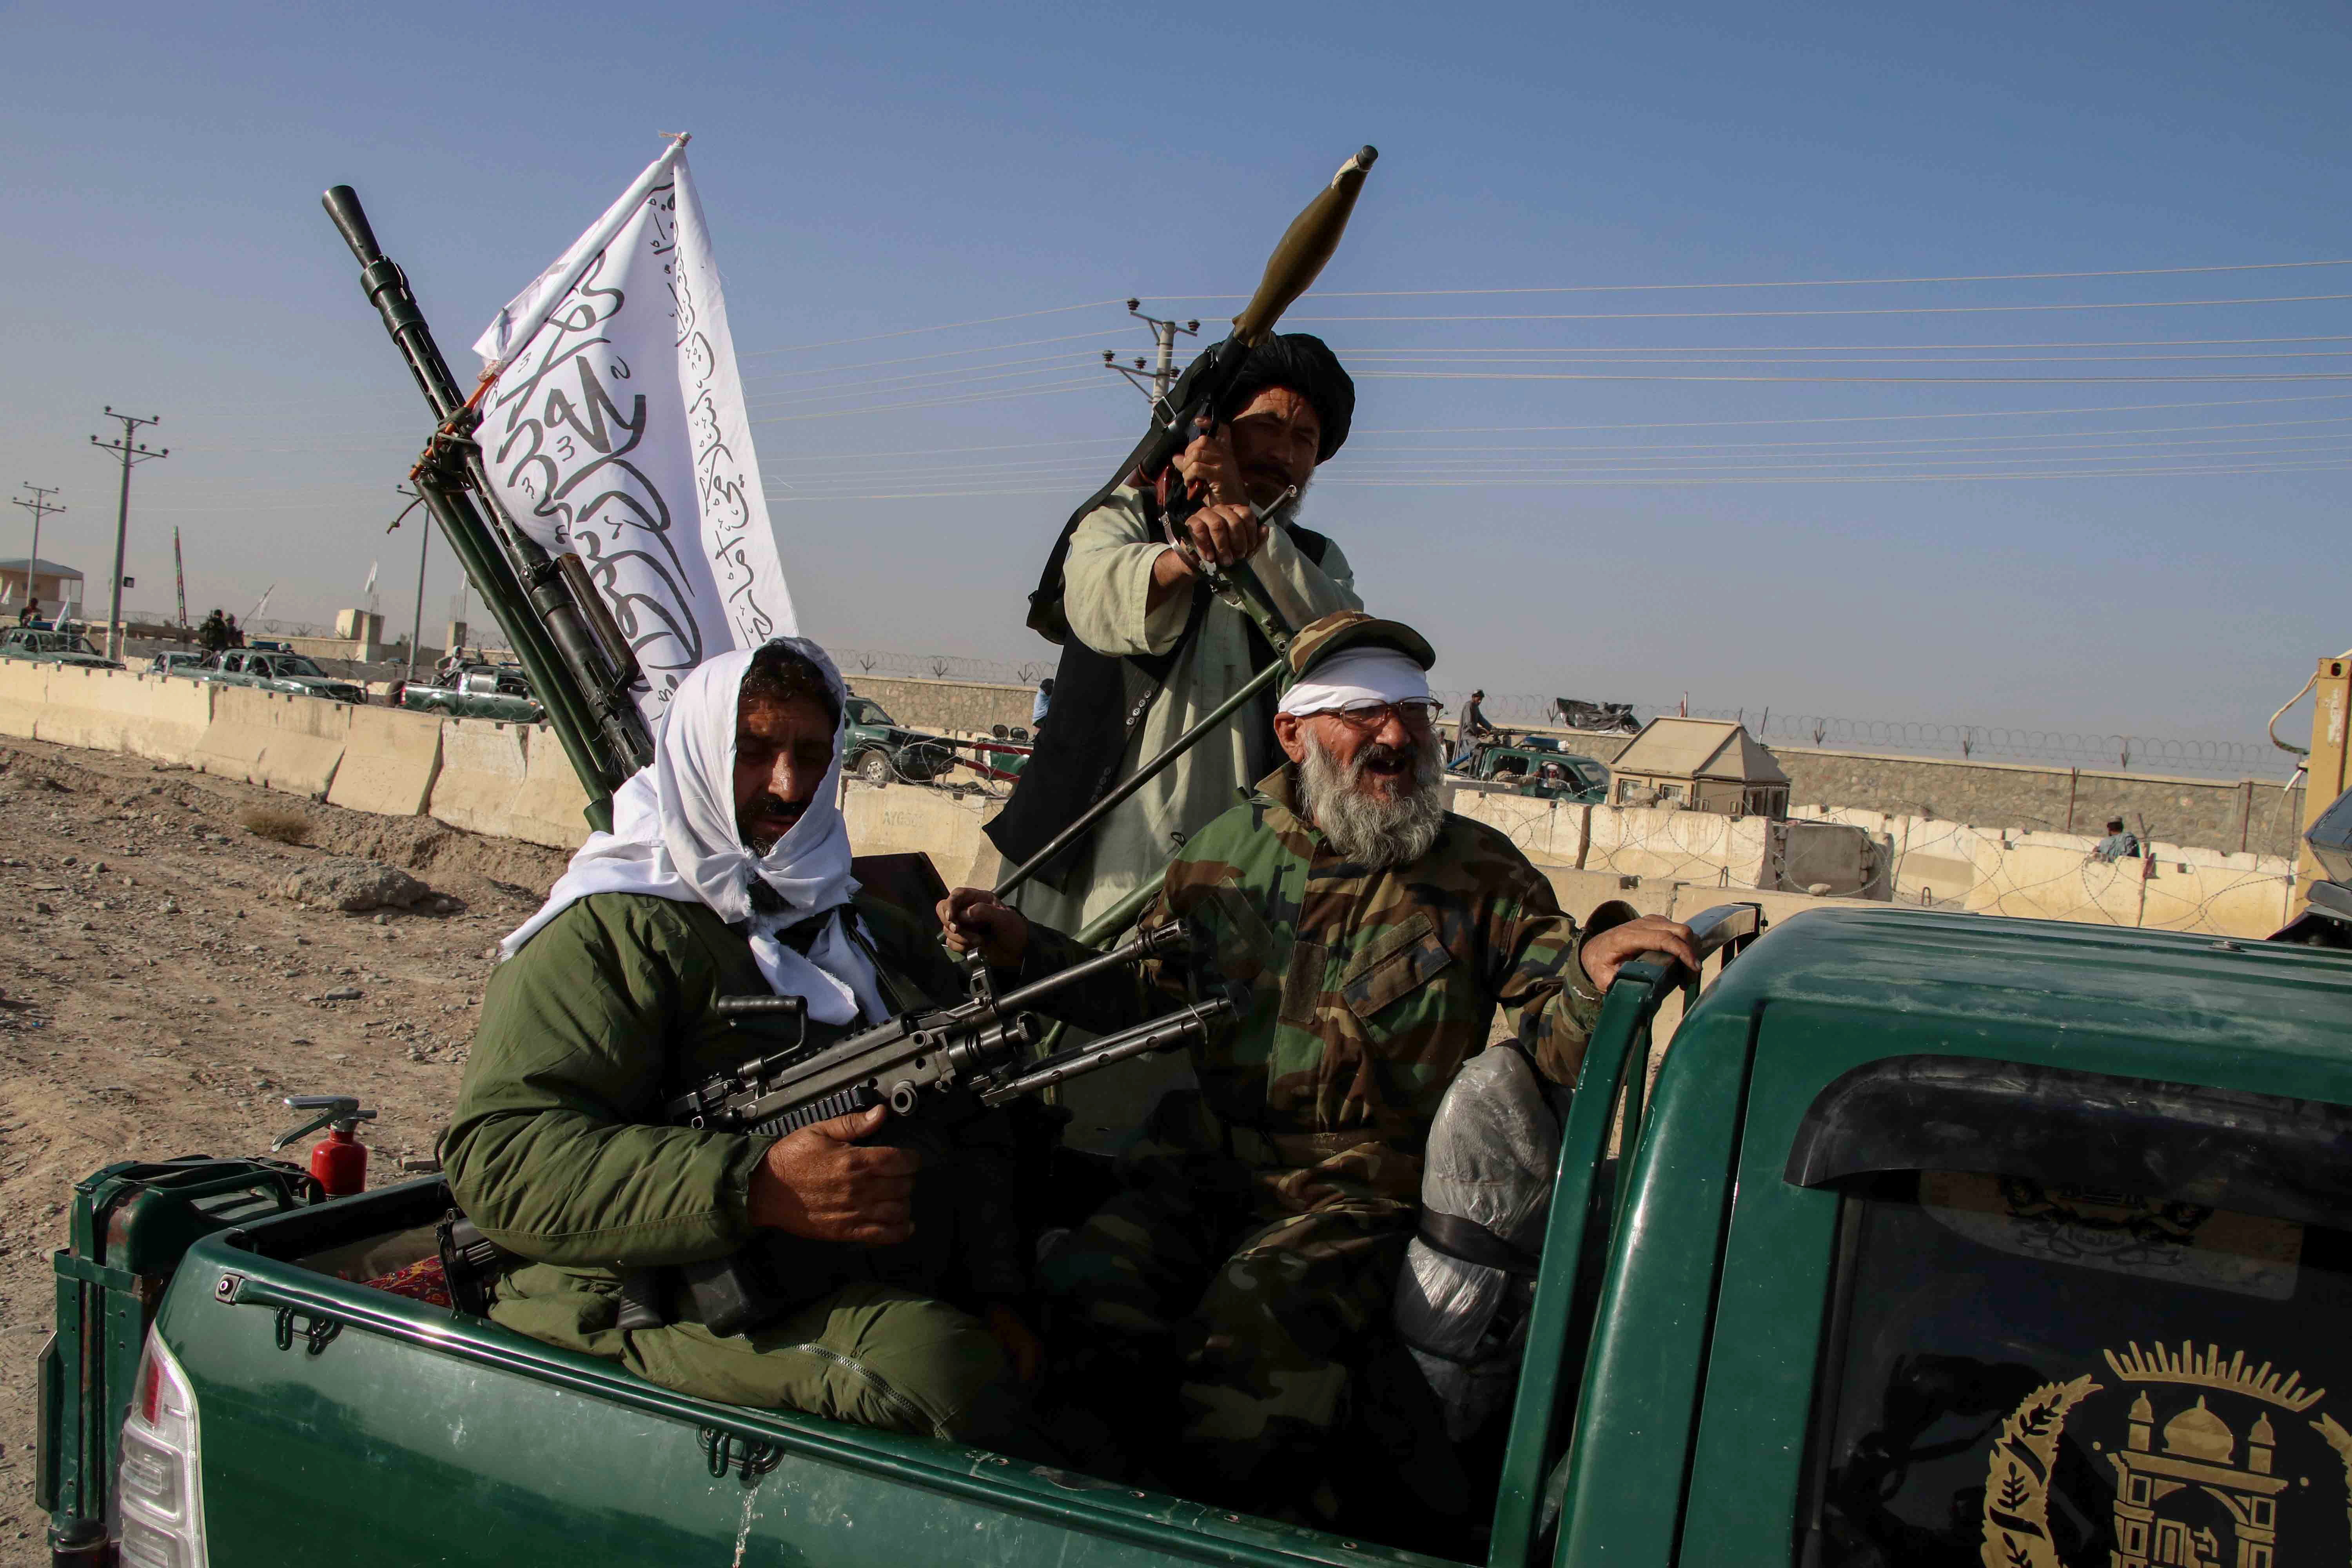 El avance de los talibanes en Afganistán han aumentado las preocupaciones sobre posibles amenazas. EFE/EPA/STRINGER
